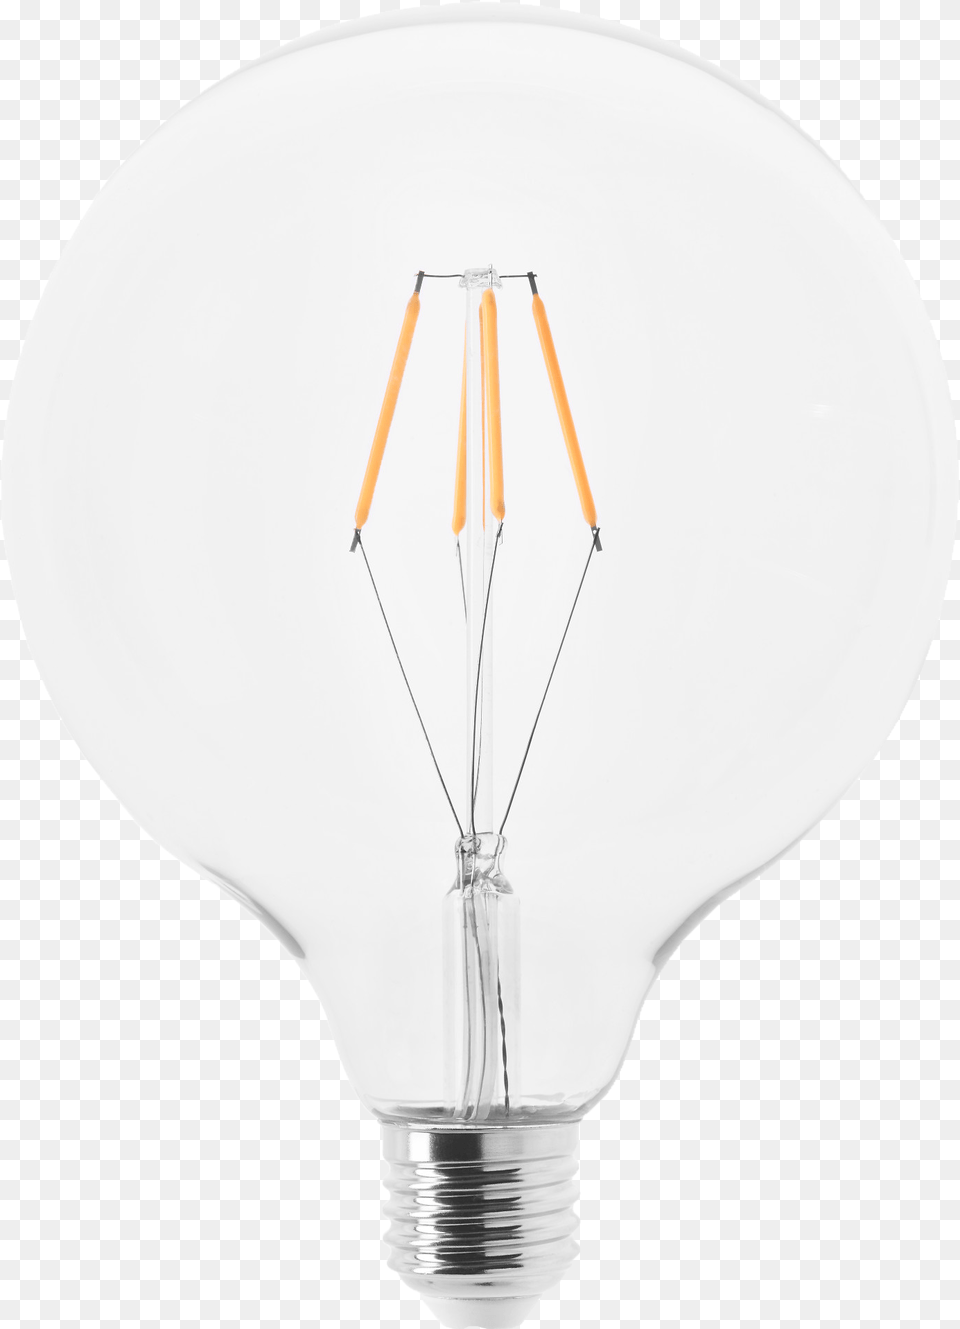 Bulb Background Incandescent Light Bulb, Lightbulb, Chandelier, Lamp Free Transparent Png